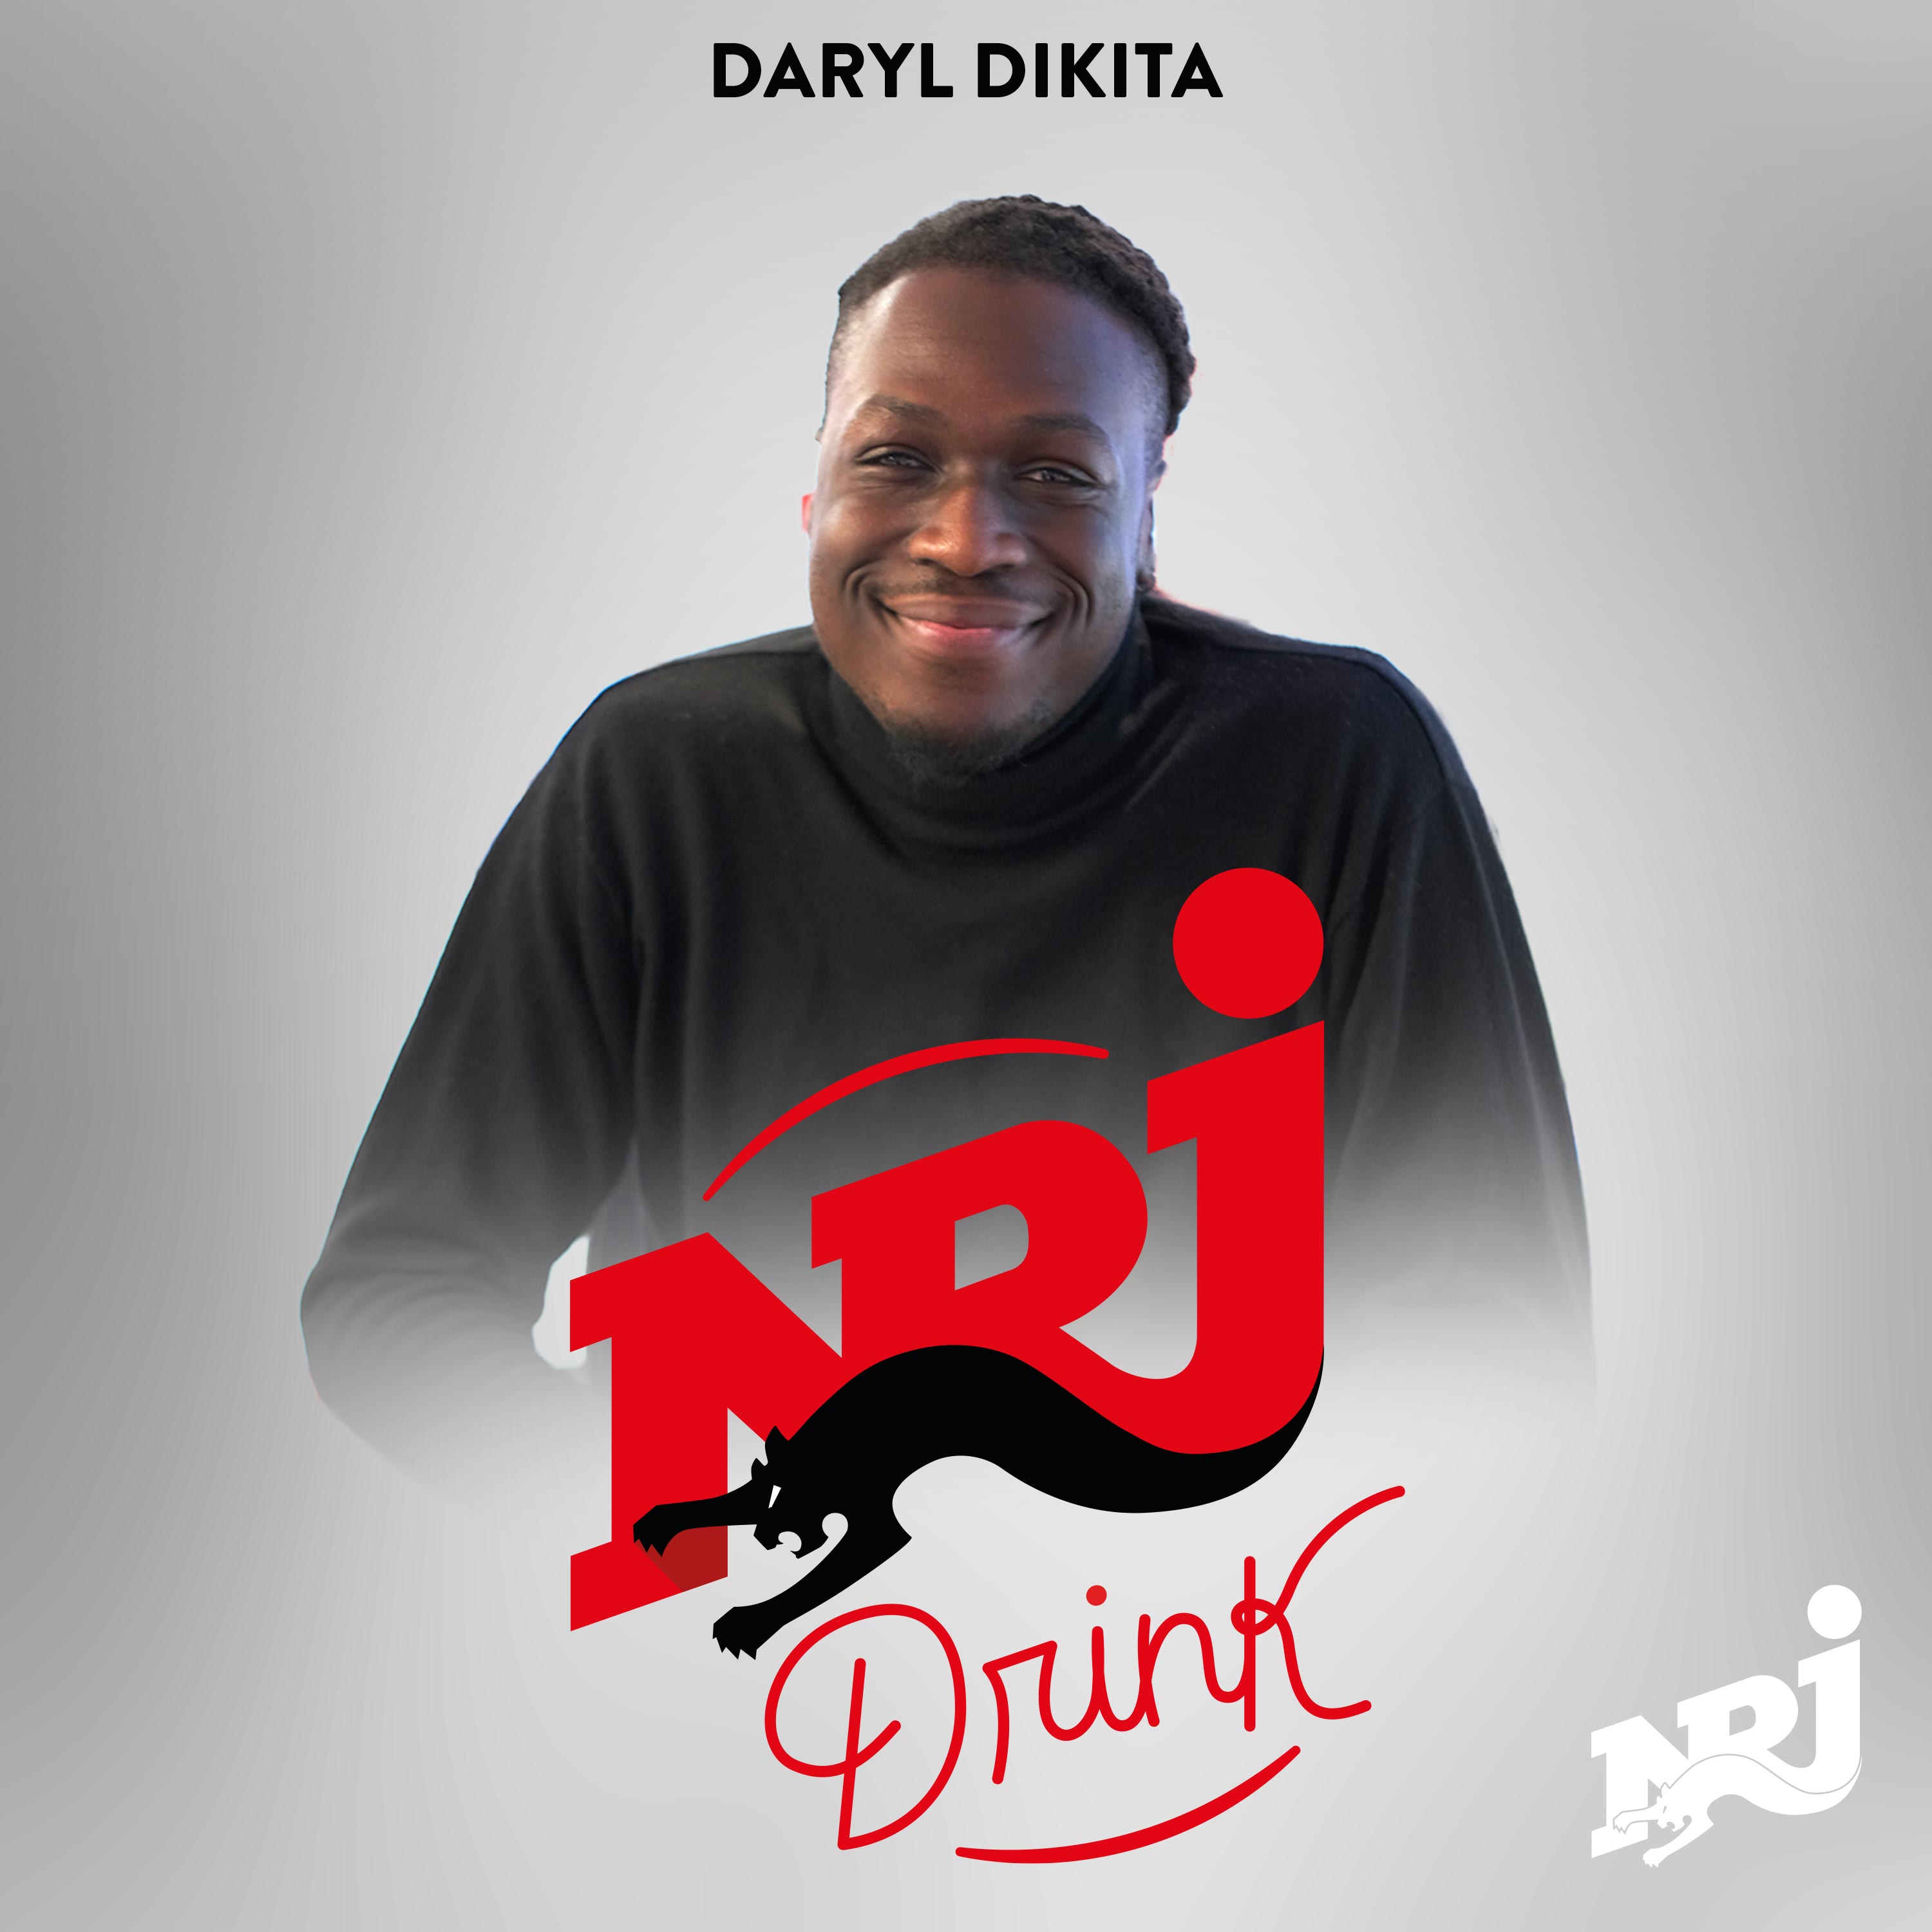 Daryl Dikita, futur acteur ?